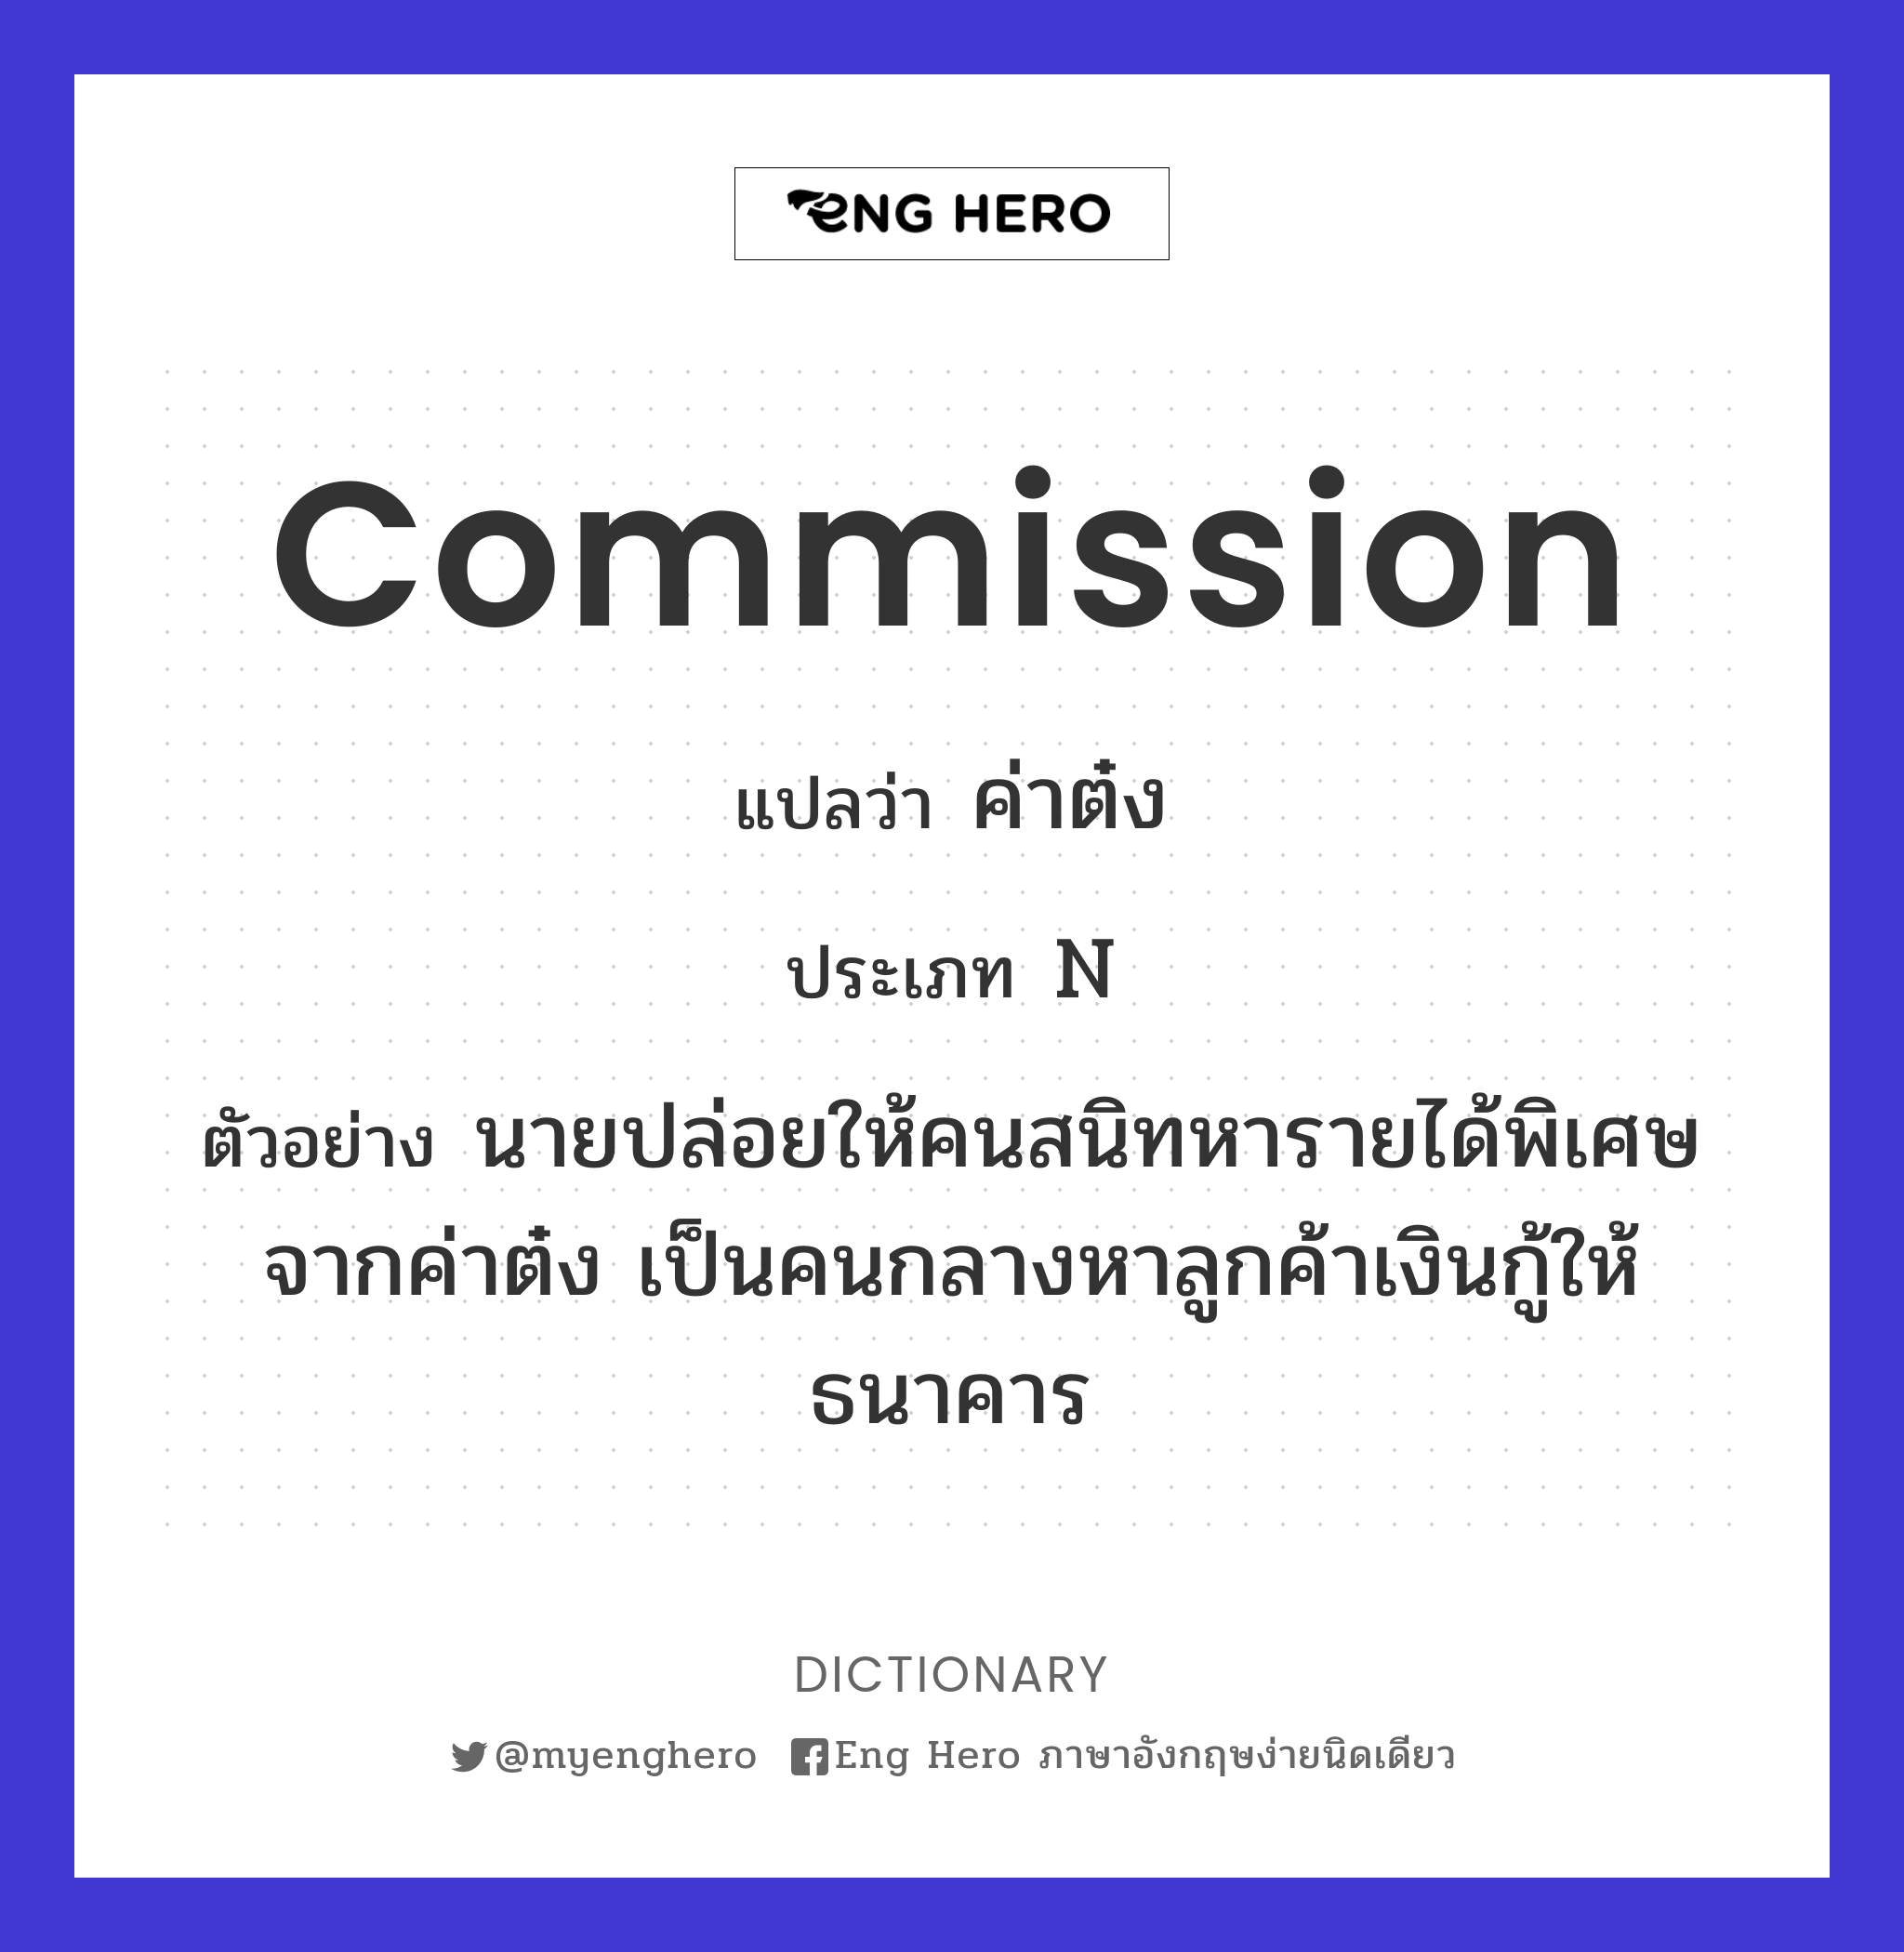 commission